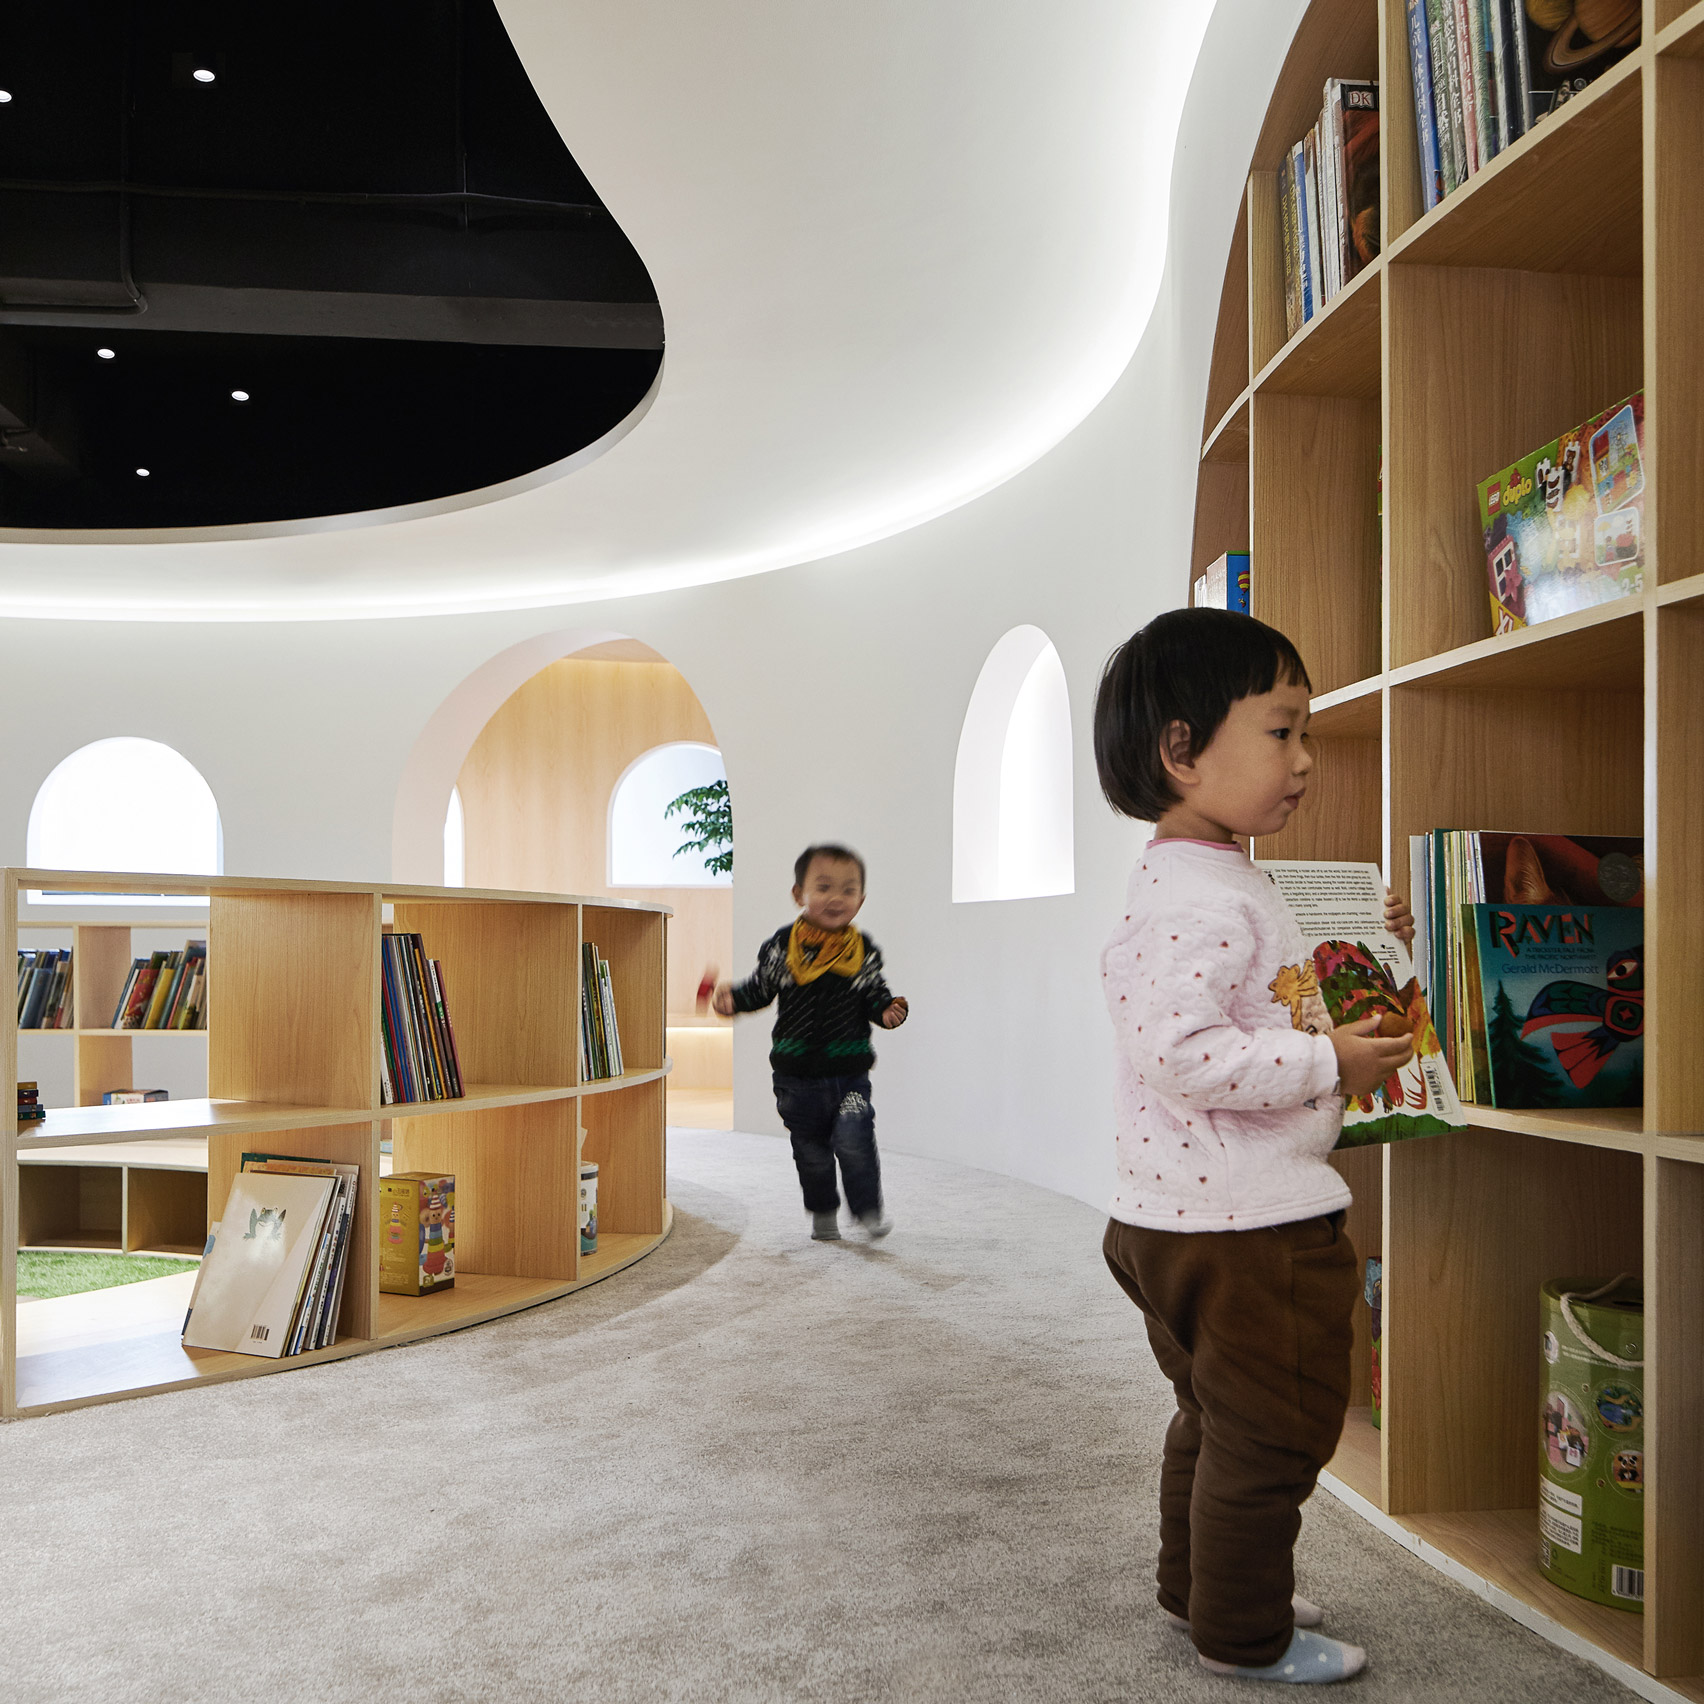 Dezeen best libraries roundup: Sissi’s Wonderland by Muxin Studio